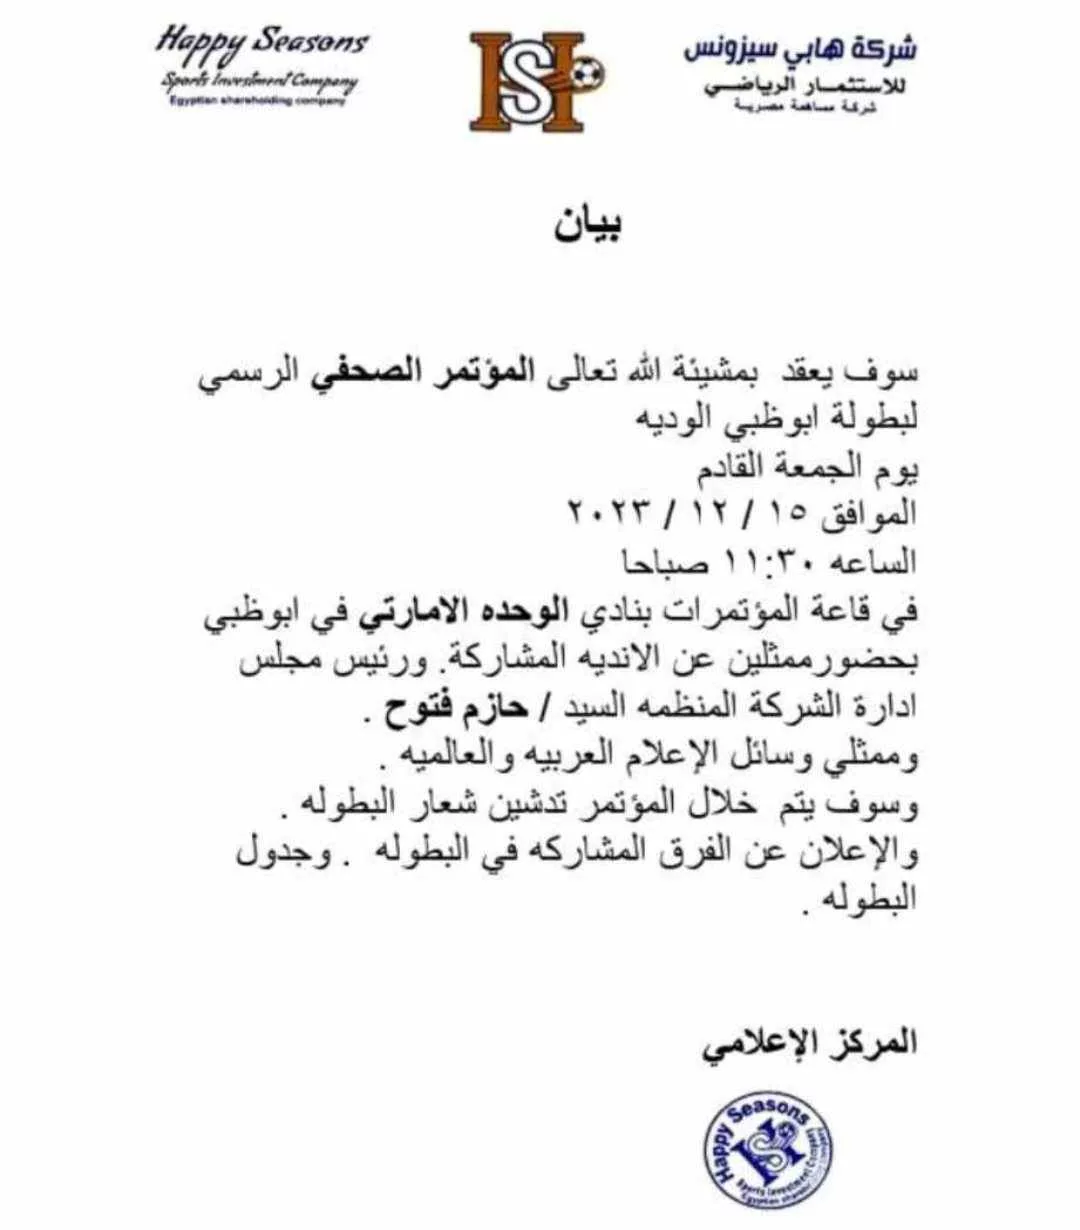 الشركة المنظمة لمعسكر الزمالك تحدد موعد الإعلان عن الفرق المشاركه في بطولة أبوظبي الودية- صورة